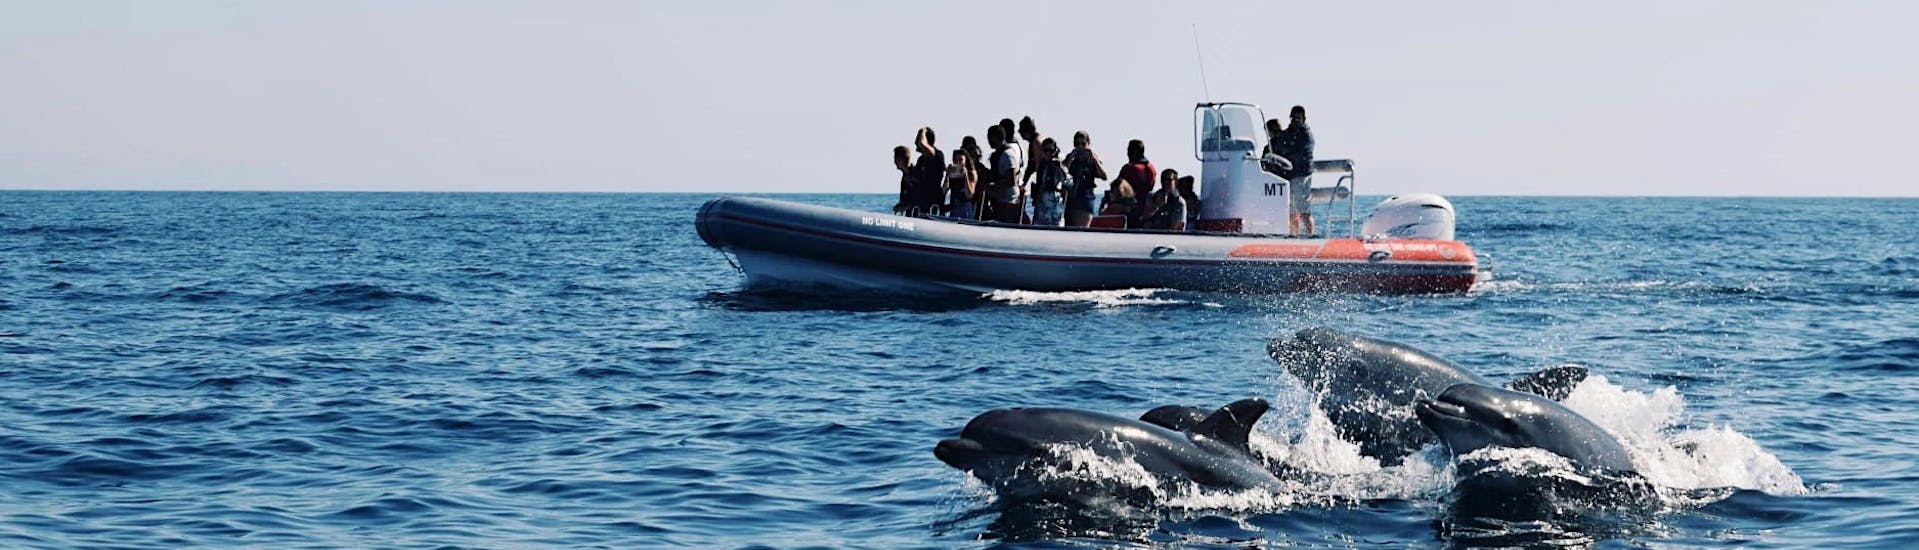 Gita in barca da Albufeira a Benagil con bagno in mare e osservazione della fauna selvatica.